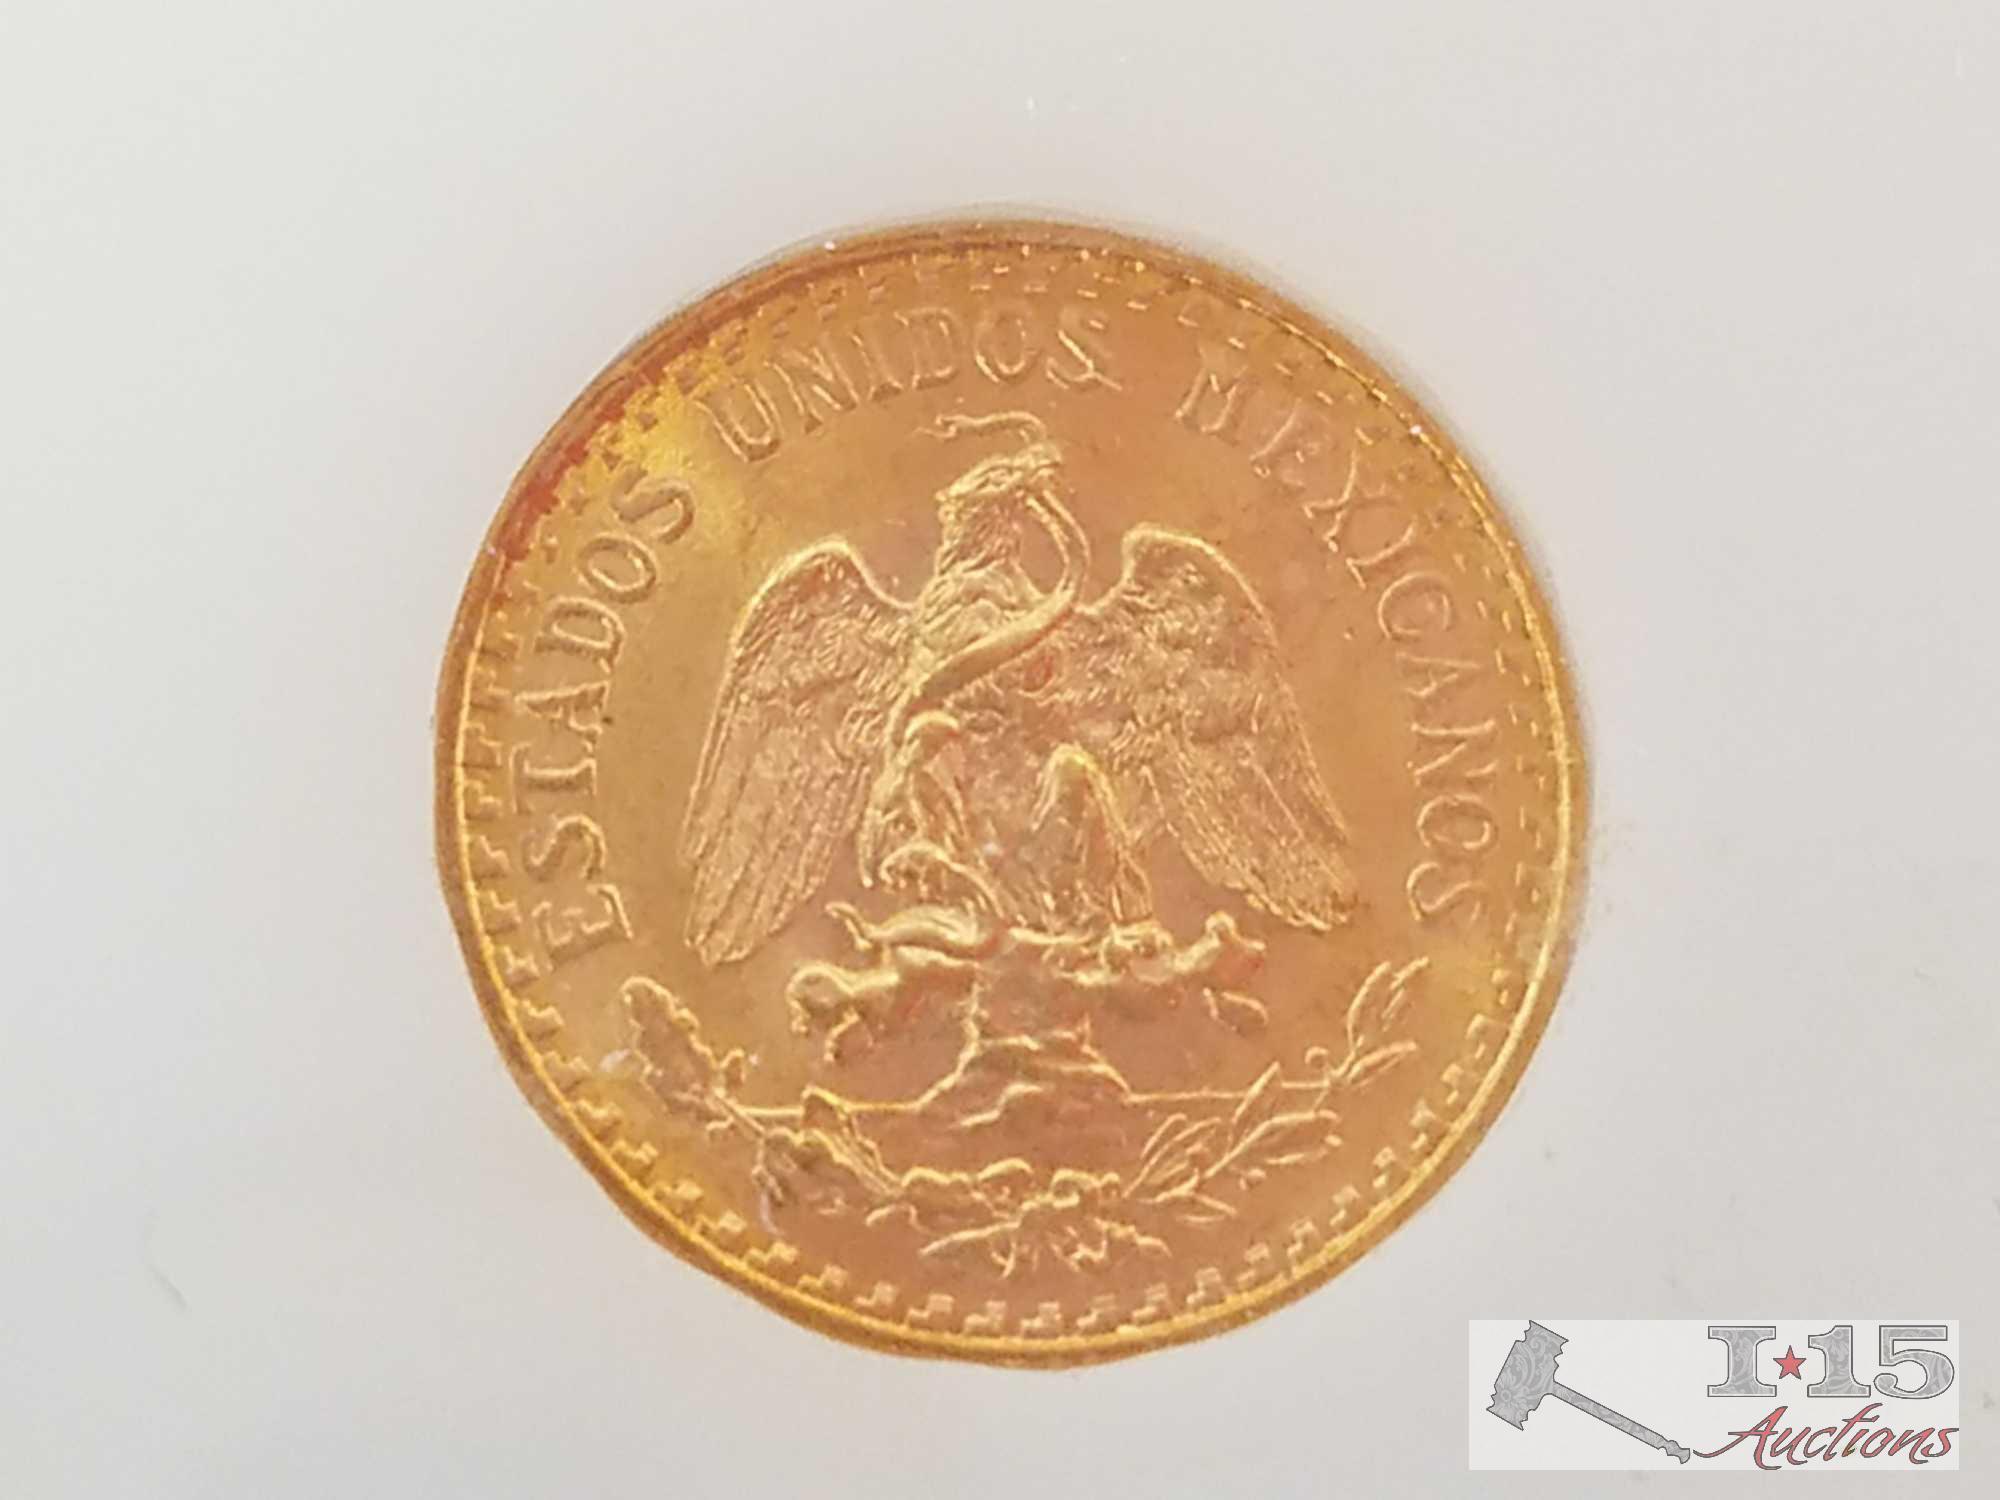 Mexico gold coins - 1955 5 pesos coin, 1945 2.5 pesos coin, 1945 2 pesos coin